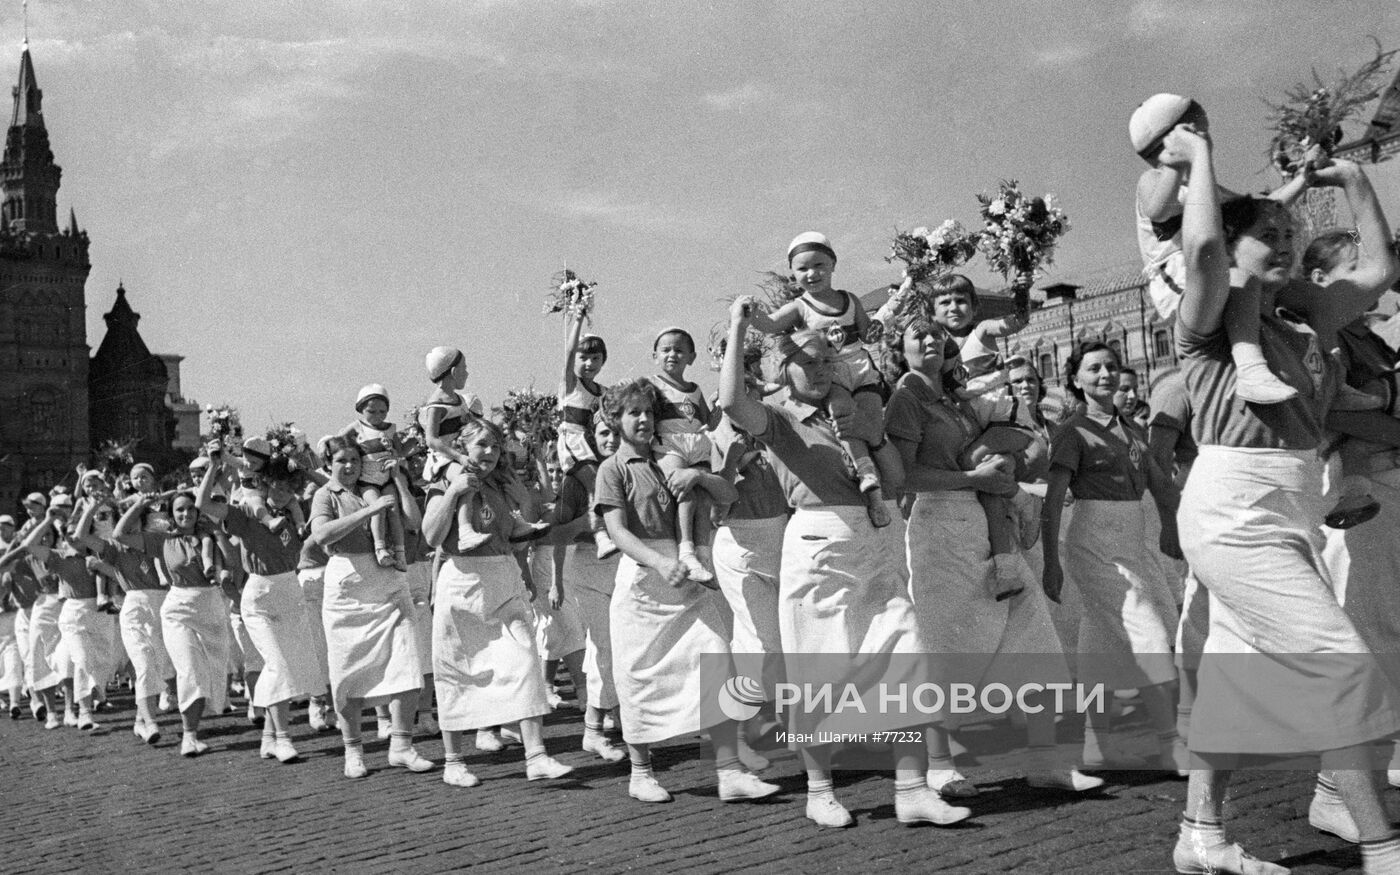 Физкультурный парад на Красной площади